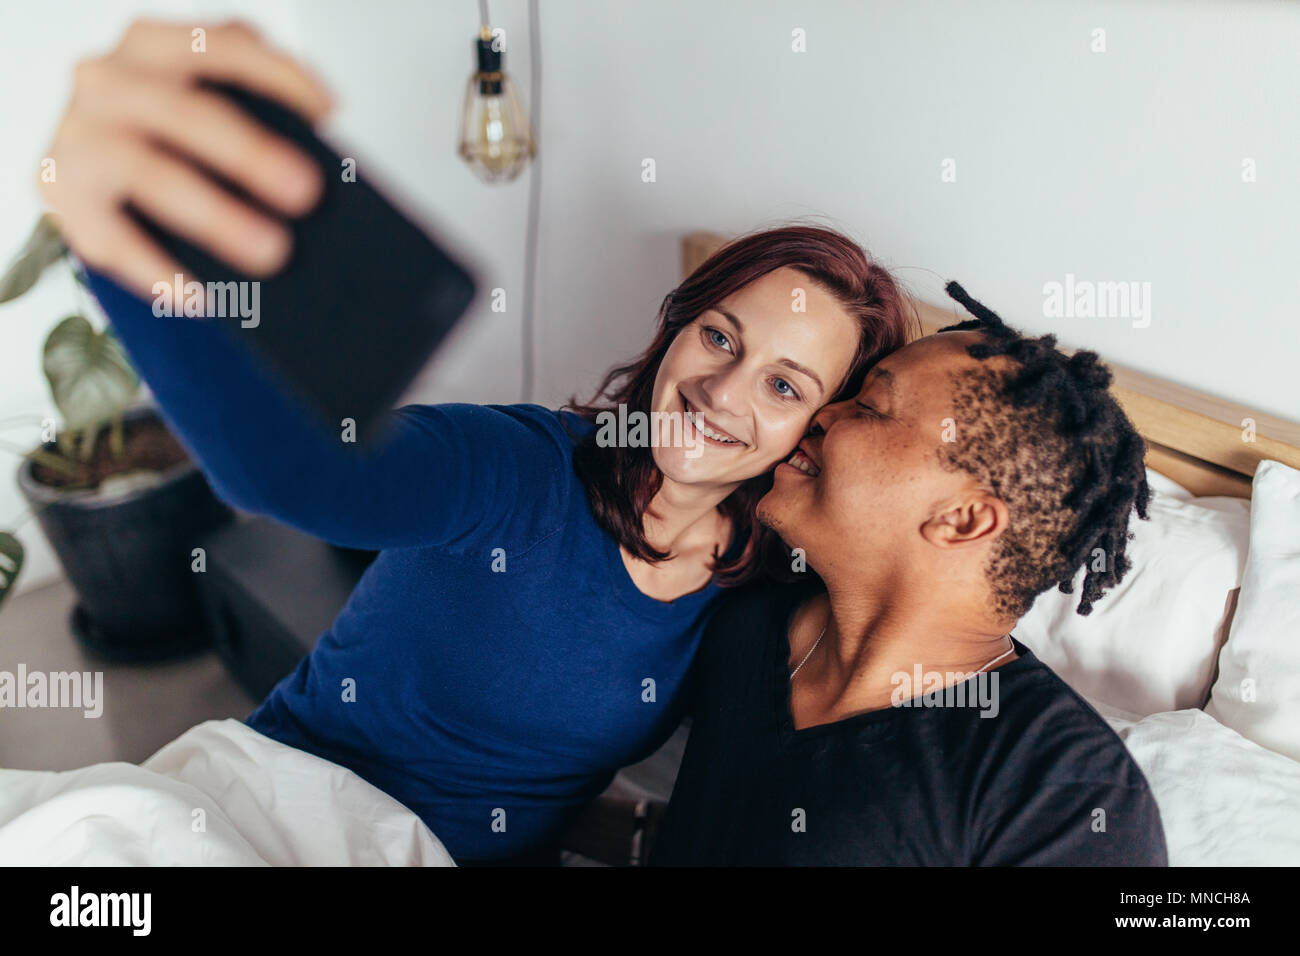 Romantico multirazziale giovane giacente insieme sul letto e tenendo selfie. Uomo sorridente bacio sulla guancia della donna prendendo selfie con il telefono cellulare. Foto Stock